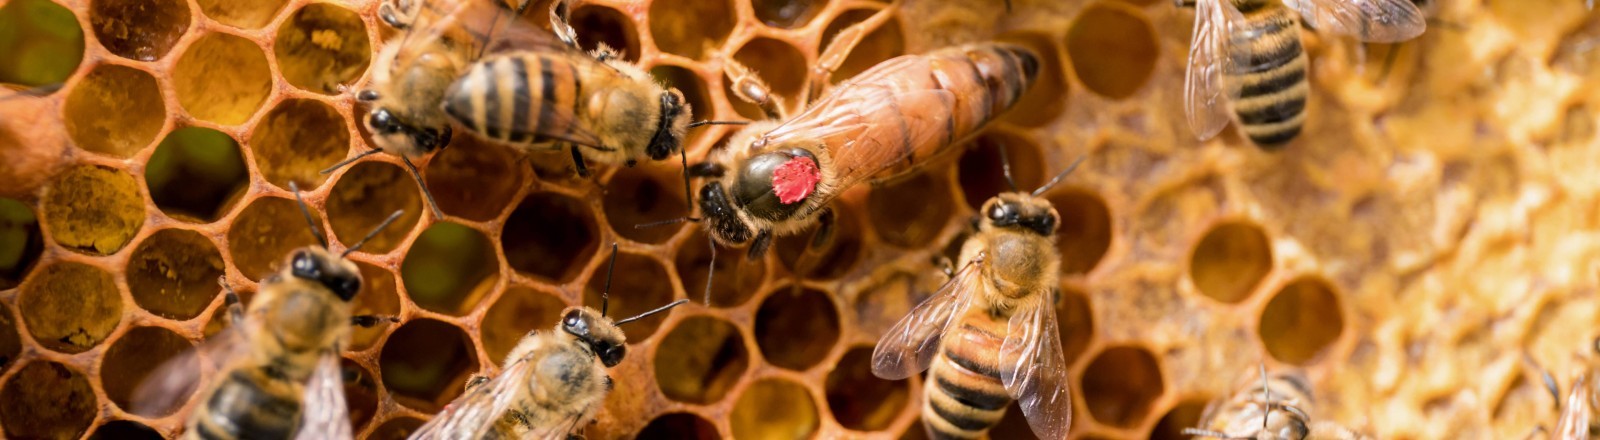 Bienen sind erstaunlich intelligent